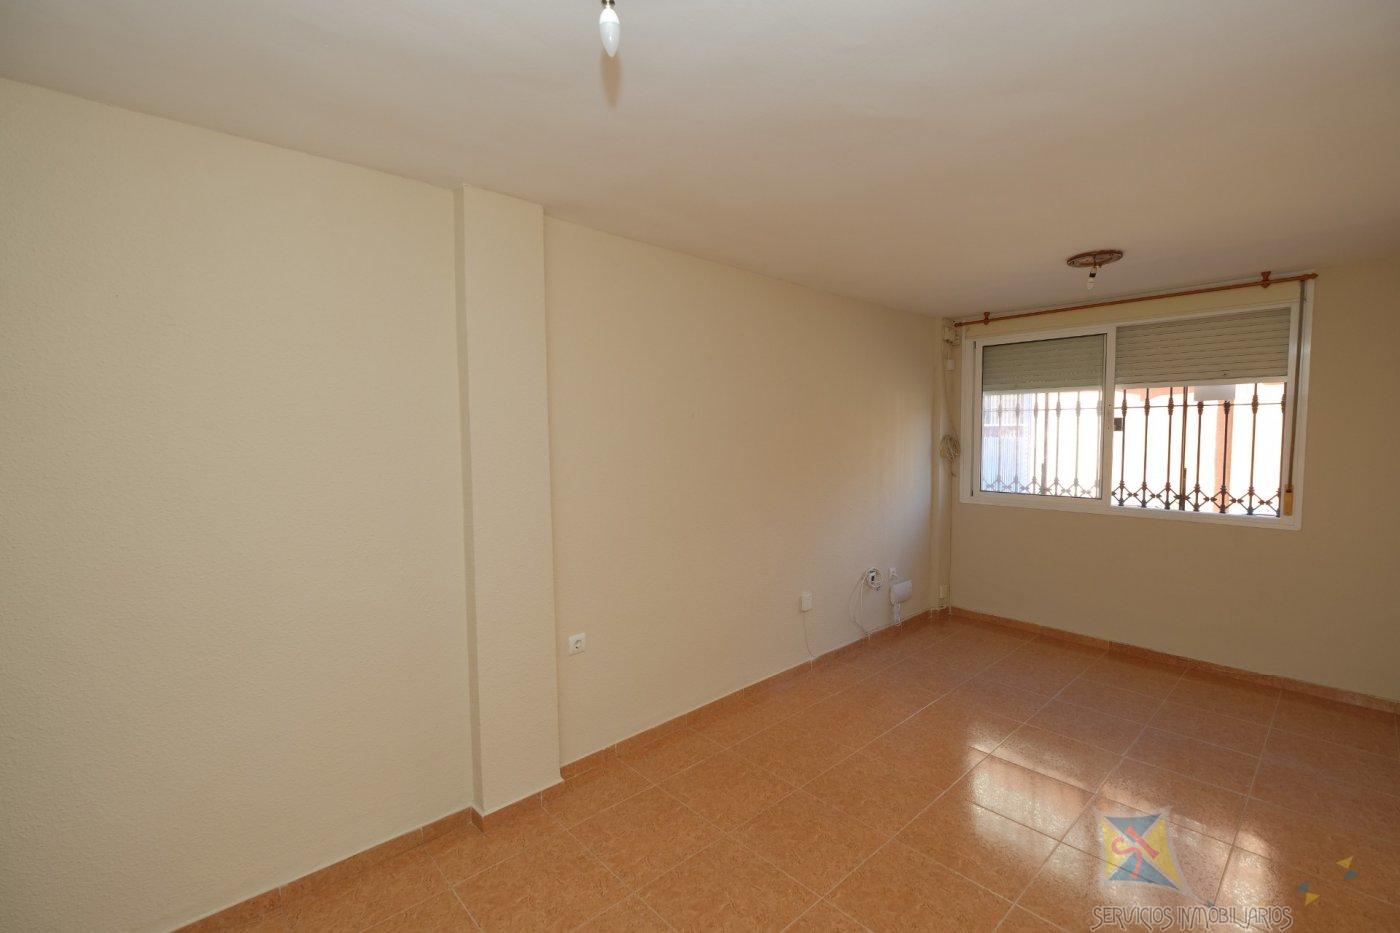 For sale of flat in Alcalá de Guadaíra